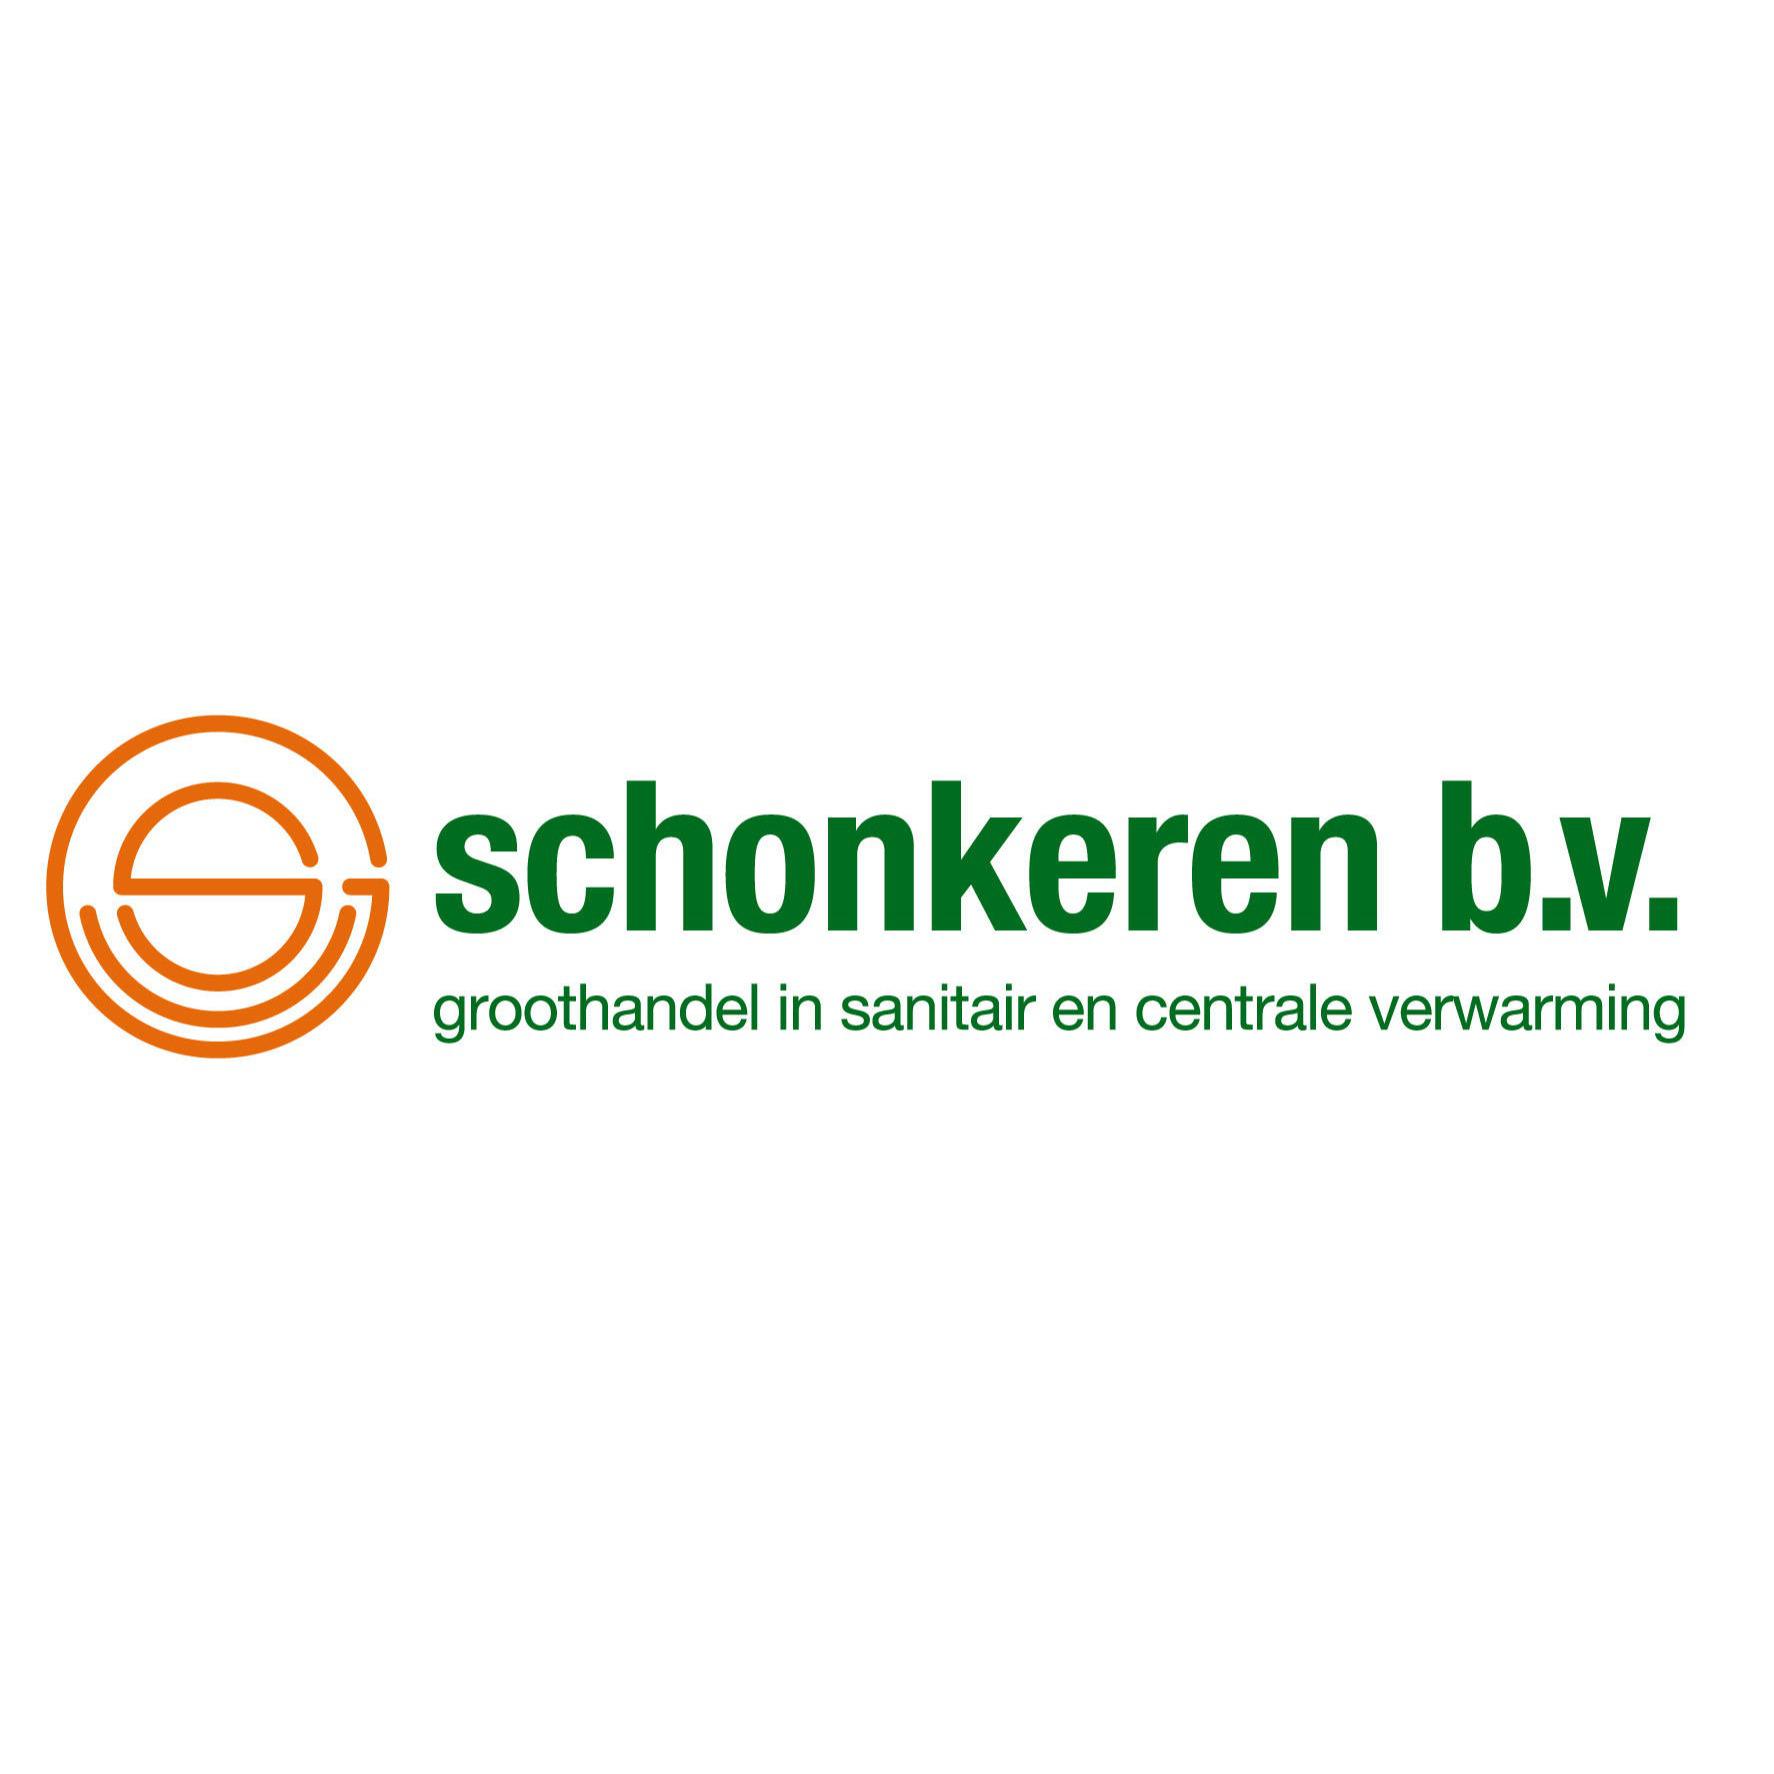 Schonkeren BV Sanitair & Centrale Verwarming Weert 0495 457 111